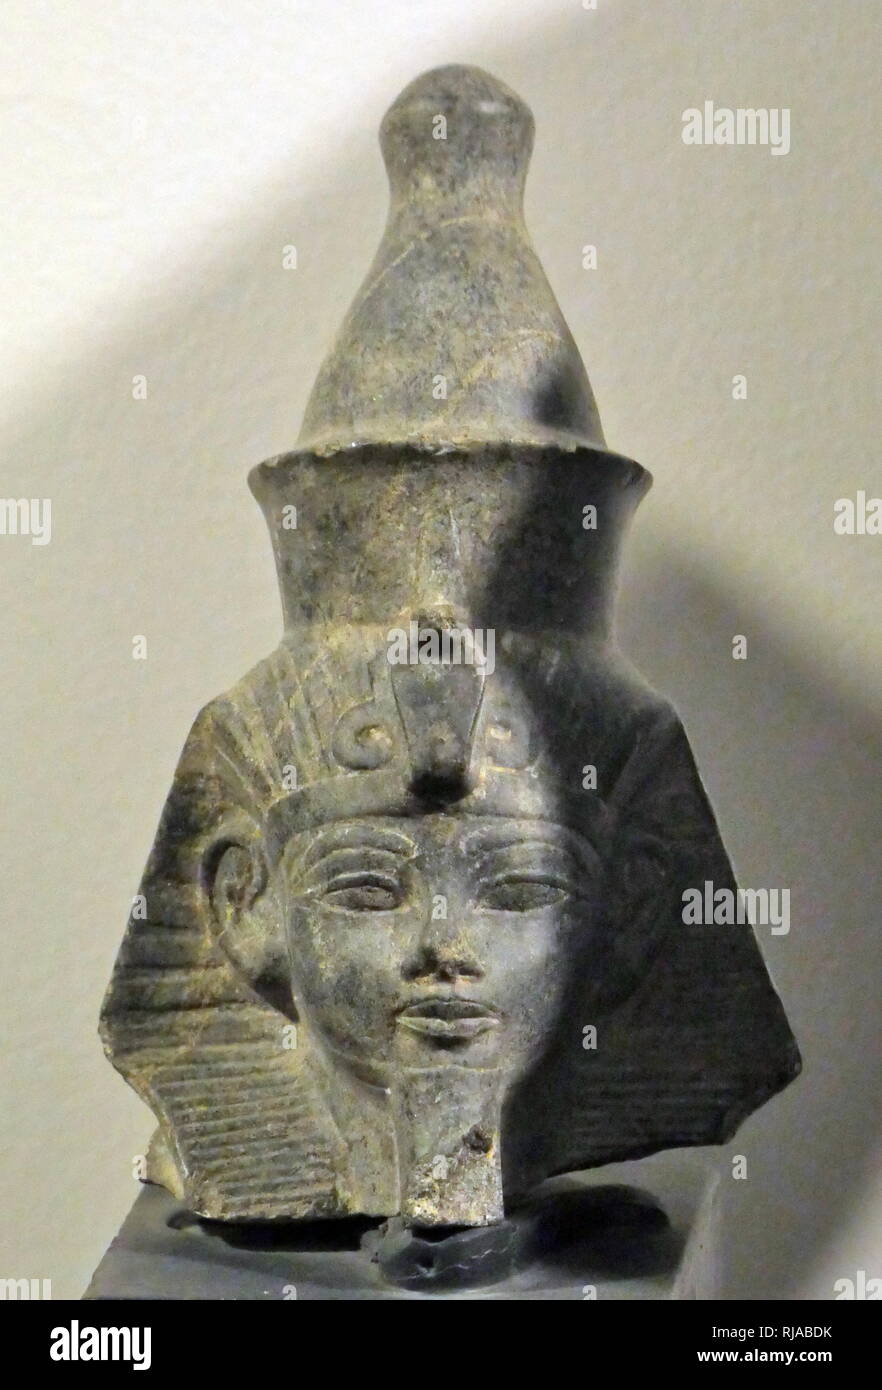 Statue en granit d'Amenhotep III, le Musée de Louxor, Louxor, Egypte. Amenhotep III (Aménophis III), également connu sous le nom d'Aménophis le magnifique, est le neuvième pharaon de la xviiie dynastie. gouvernait l'Égypte à partir de juin 1386 à 1349 av. Banque D'Images